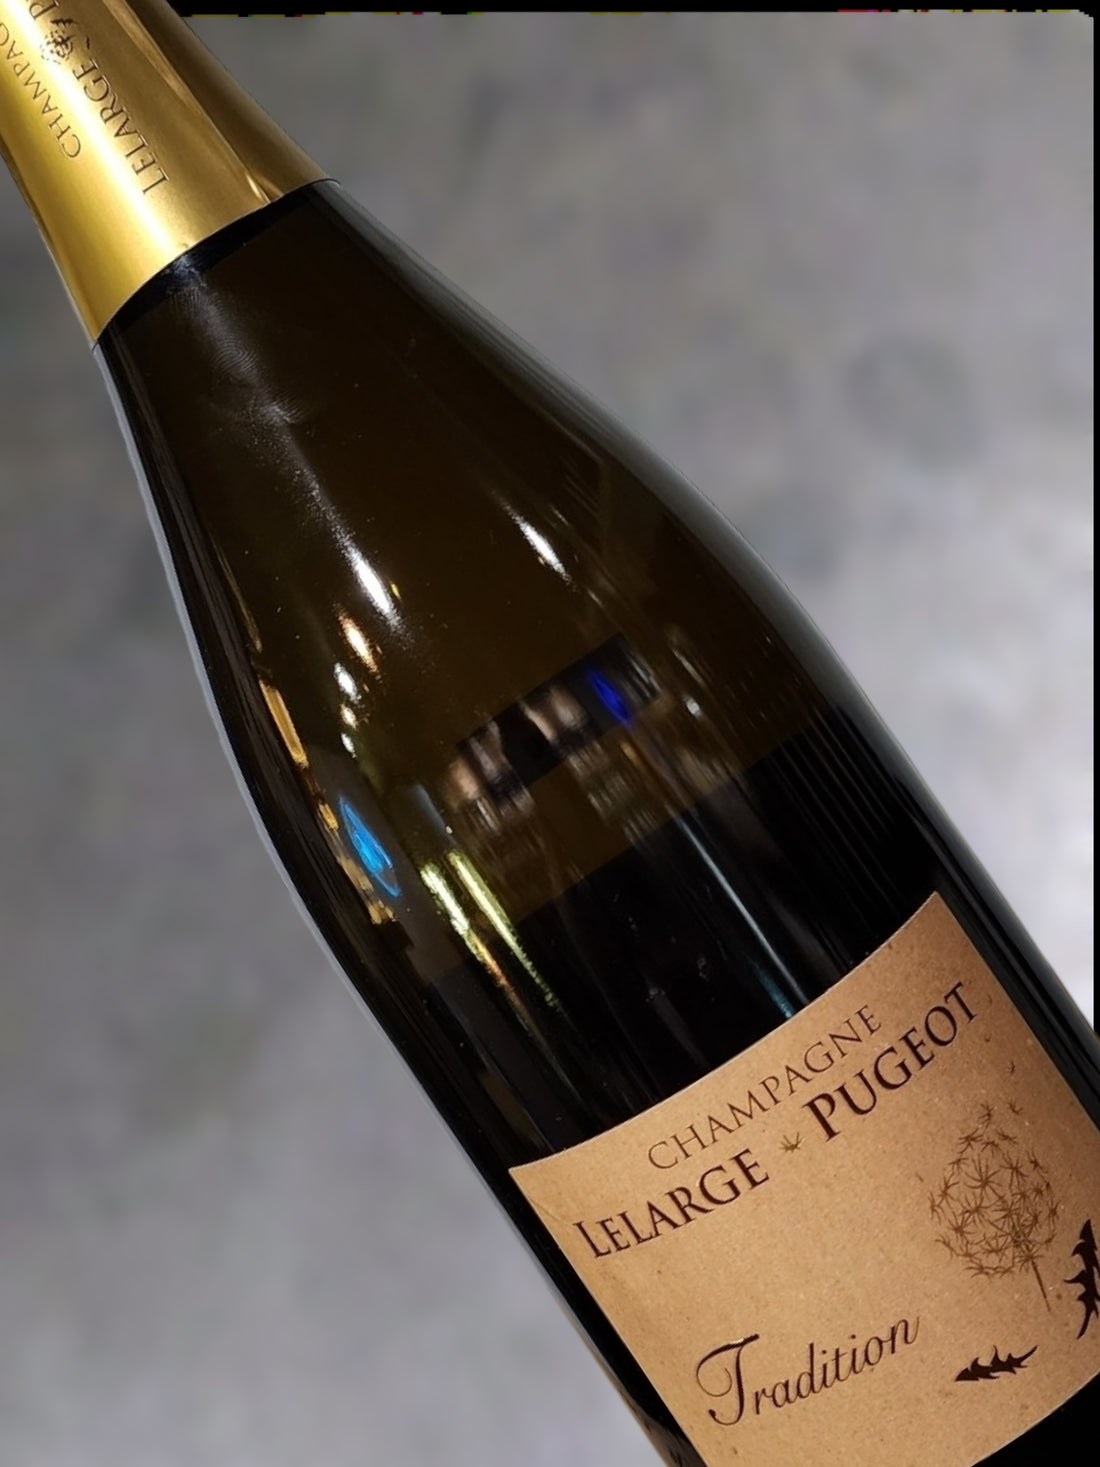 Champagne Lelarge Pugeot Tradition 1er Cru Extra Brut NV